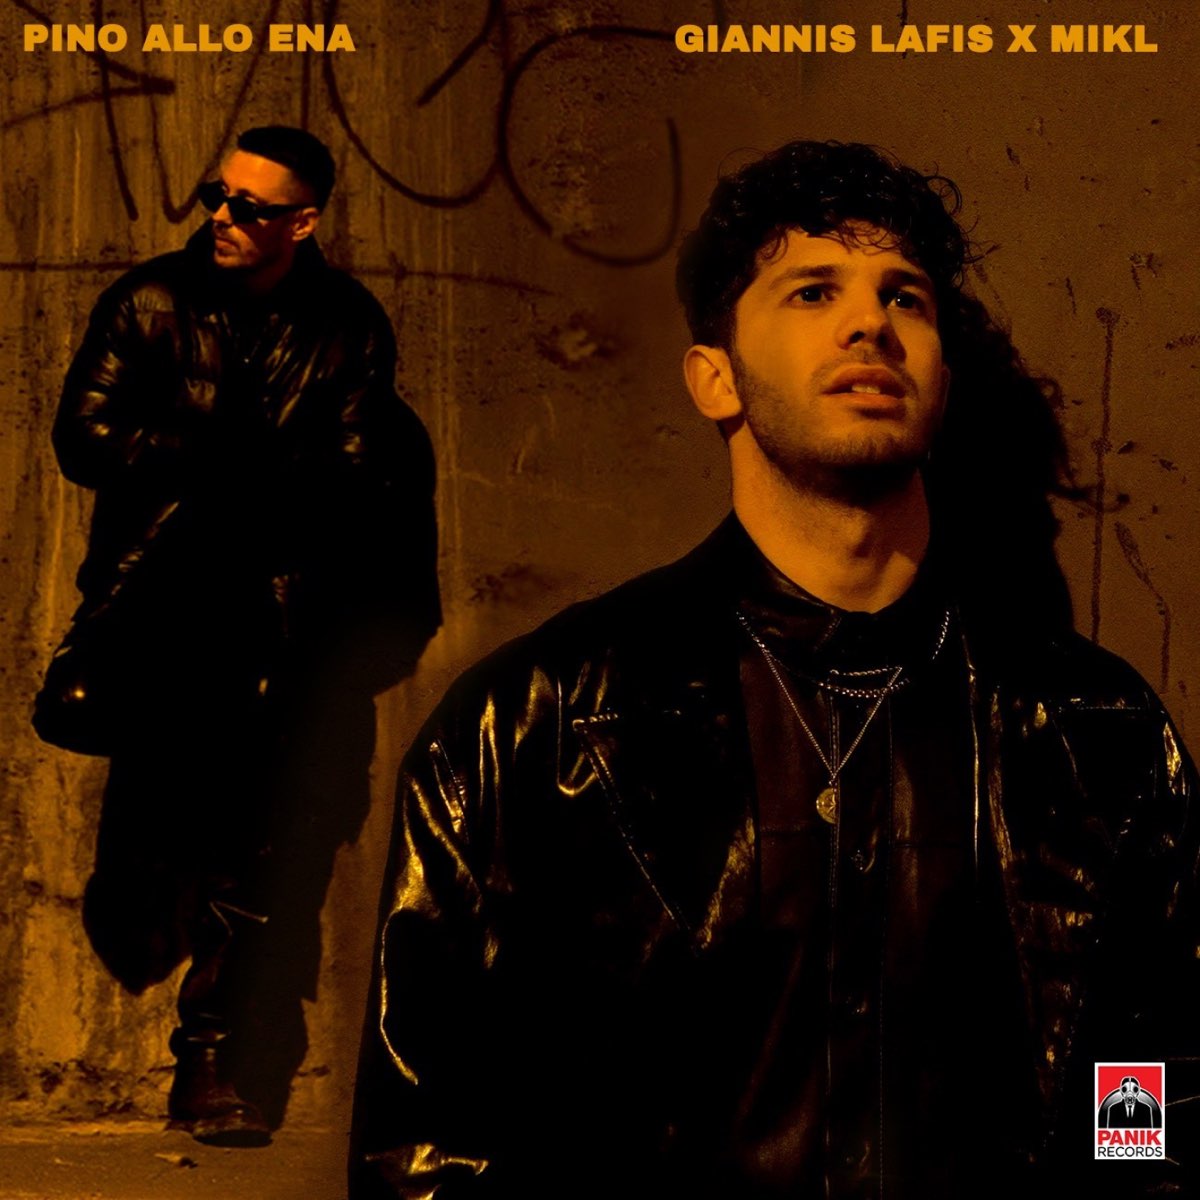 Pino Allo Ena - Single - Album by Giannis Lafis & Mikl - Apple Music